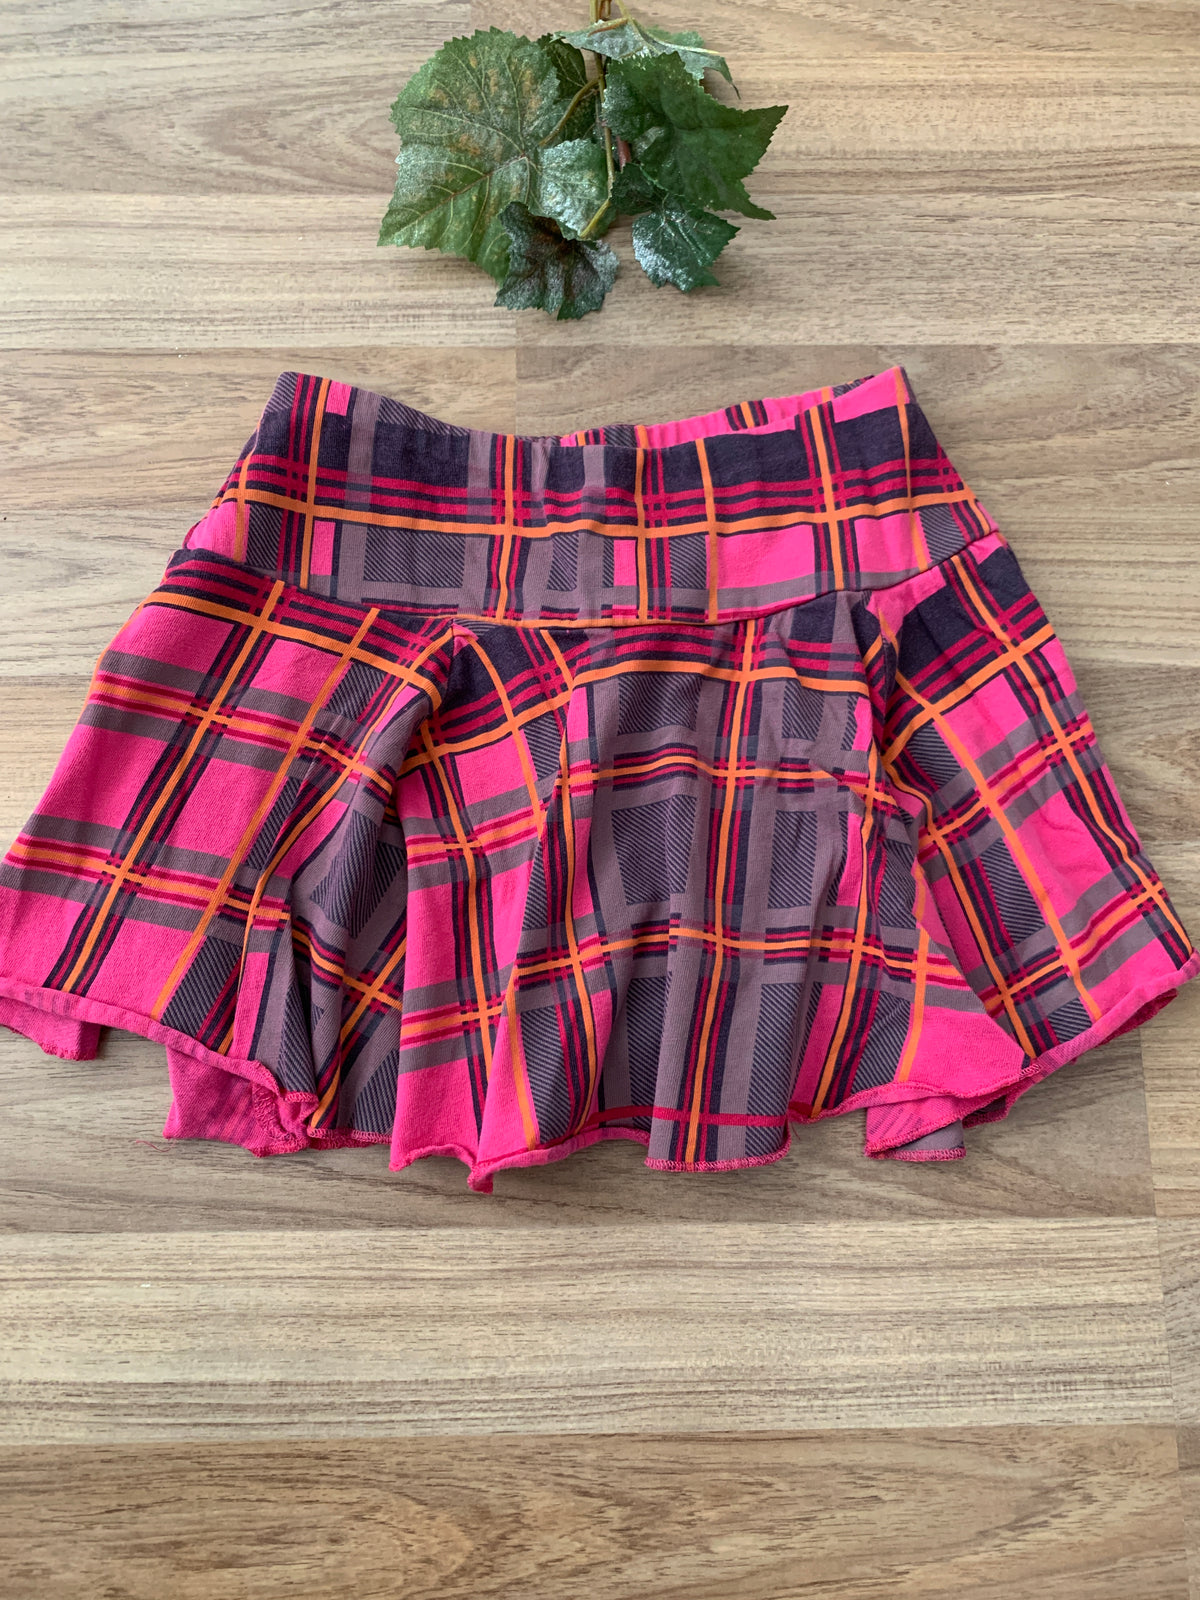 Skirt (Girls Size 6)